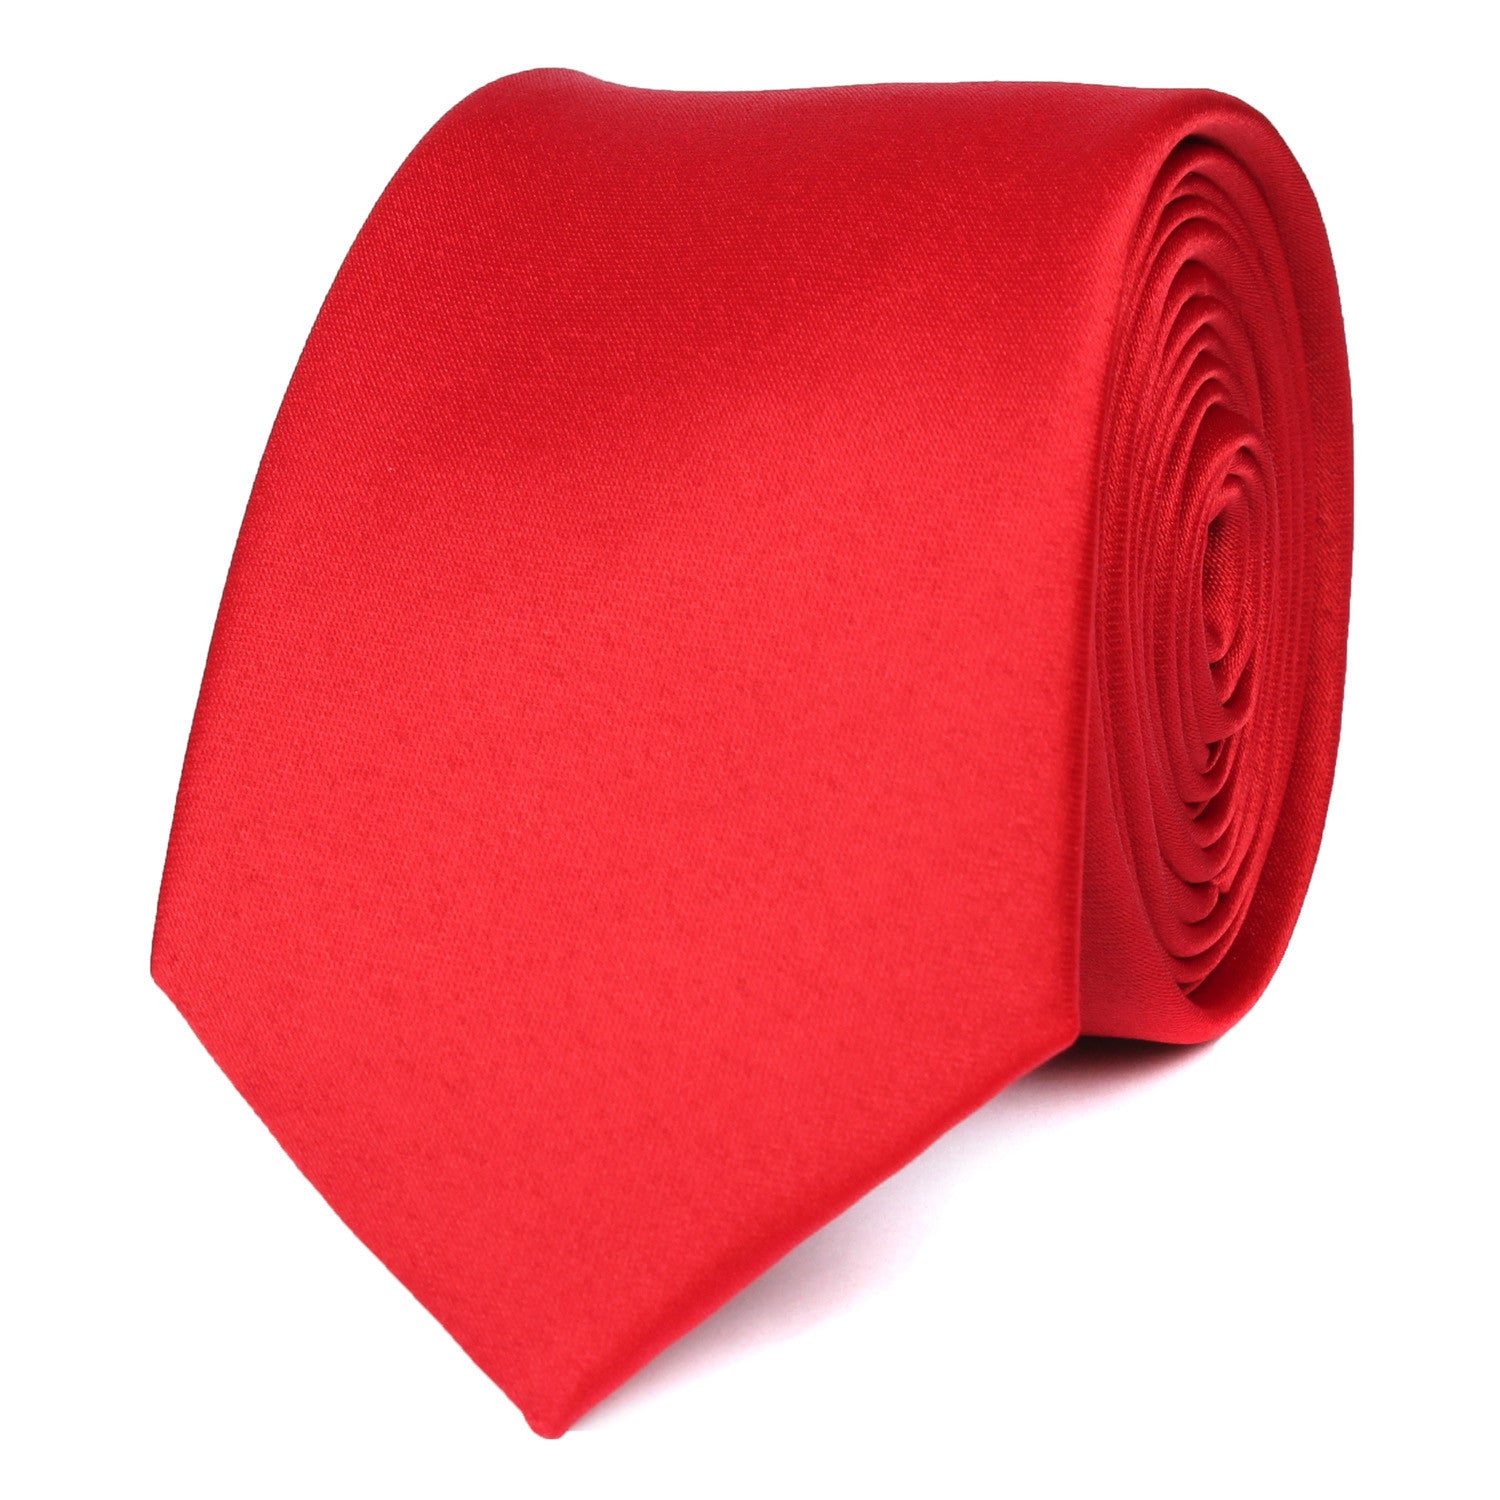 Red Maroon Skinny Tie | Power Slim Ties | Mens Thin Neckties Australia ...